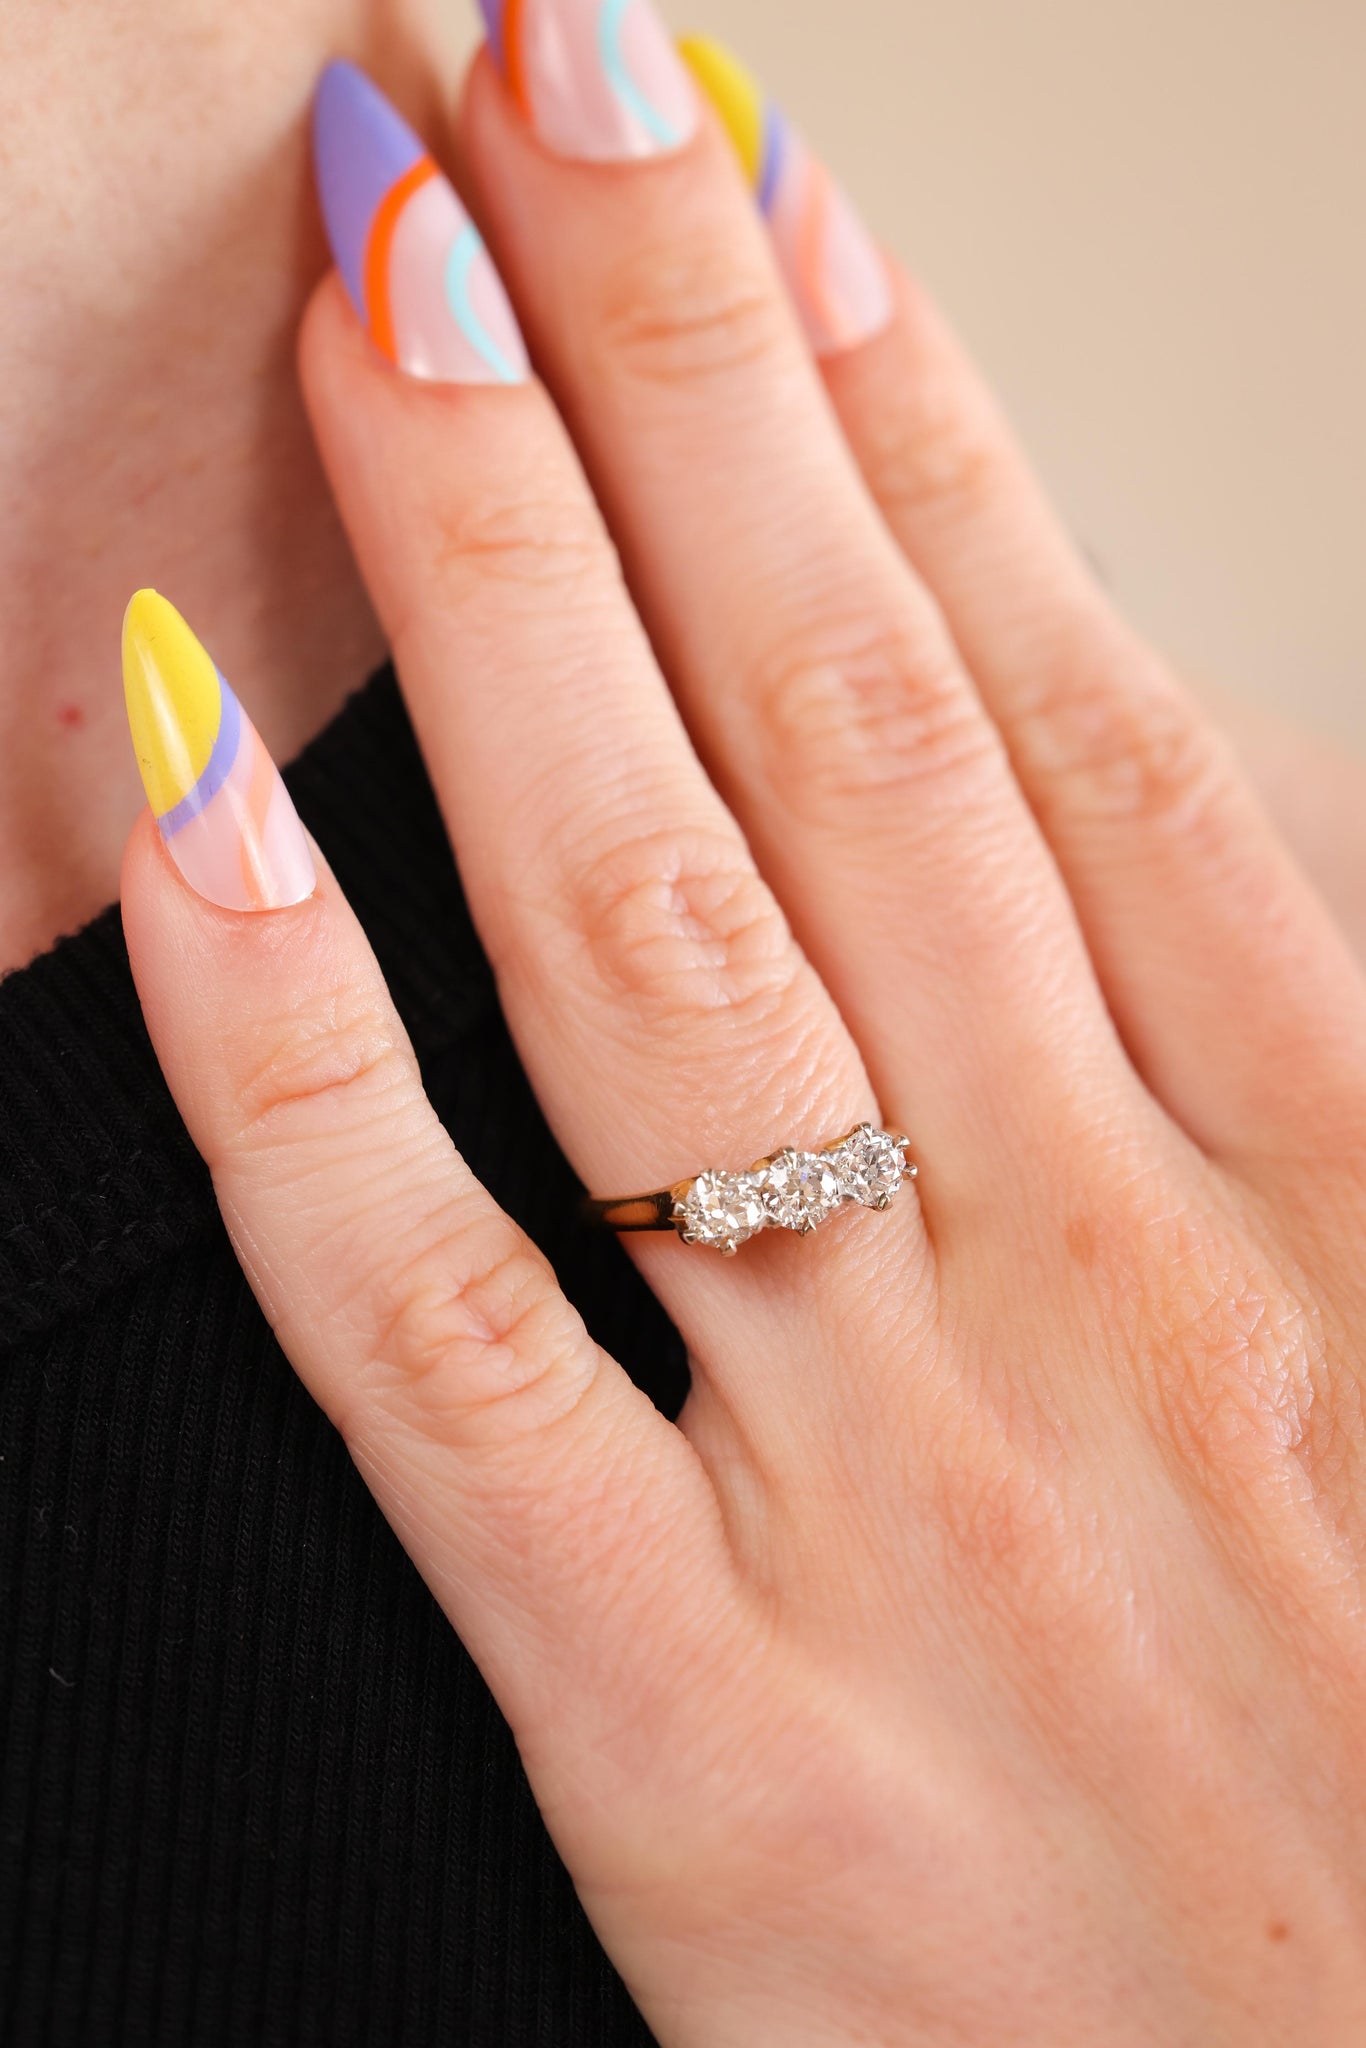 Three-Stone Diamond Ring by Birks